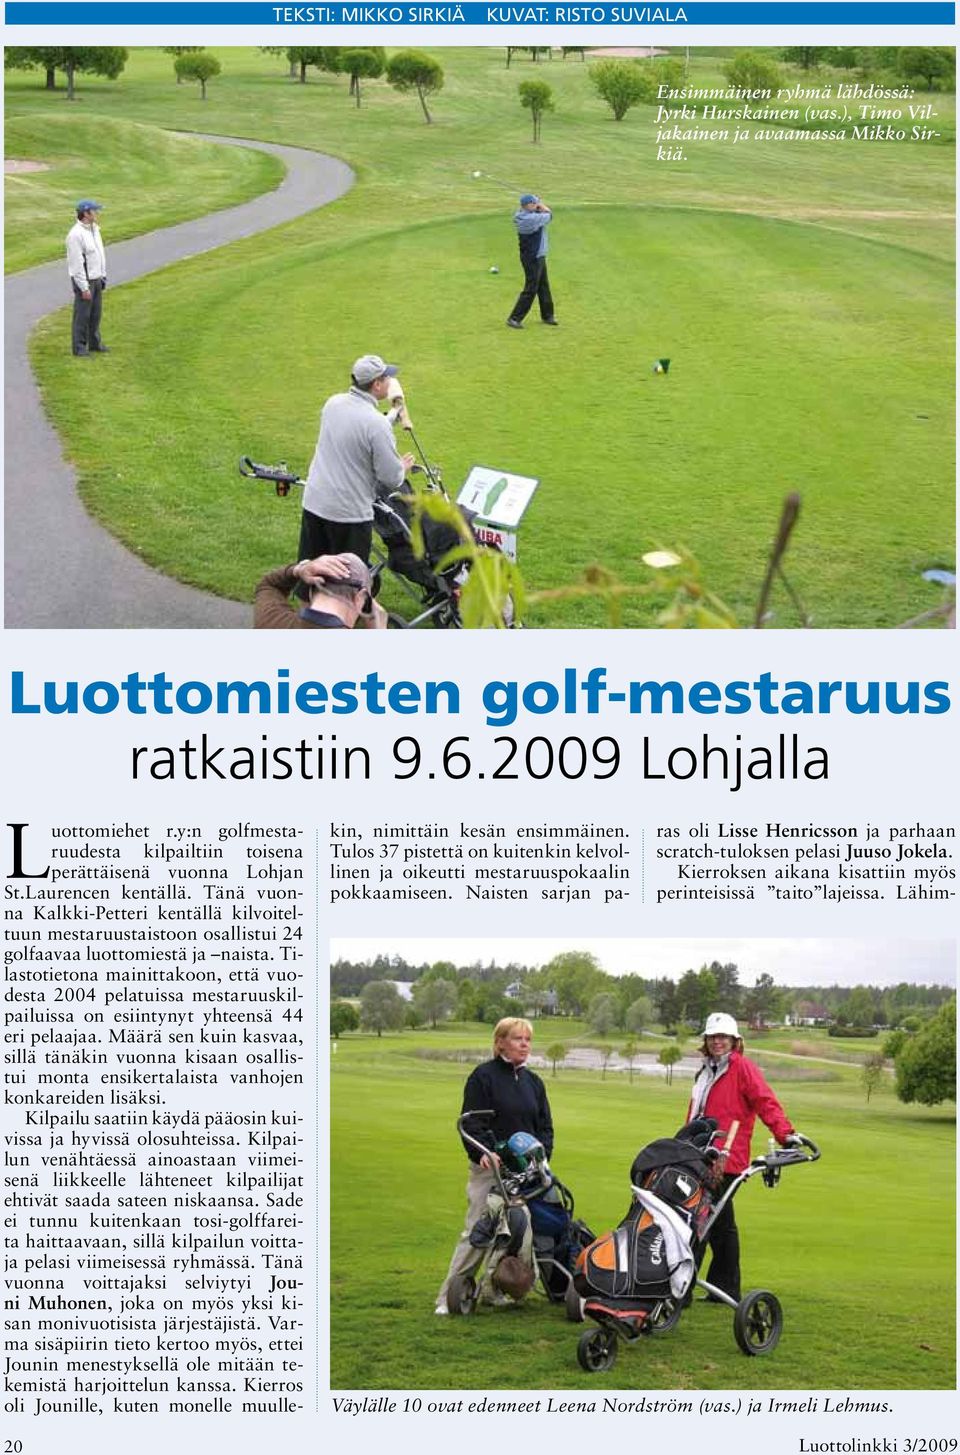 Tänä vuonna Kalkki-Petteri kentällä kilvoiteltuun mestaruustaistoon osallistui 24 golfaavaa luottomiestä ja naista.